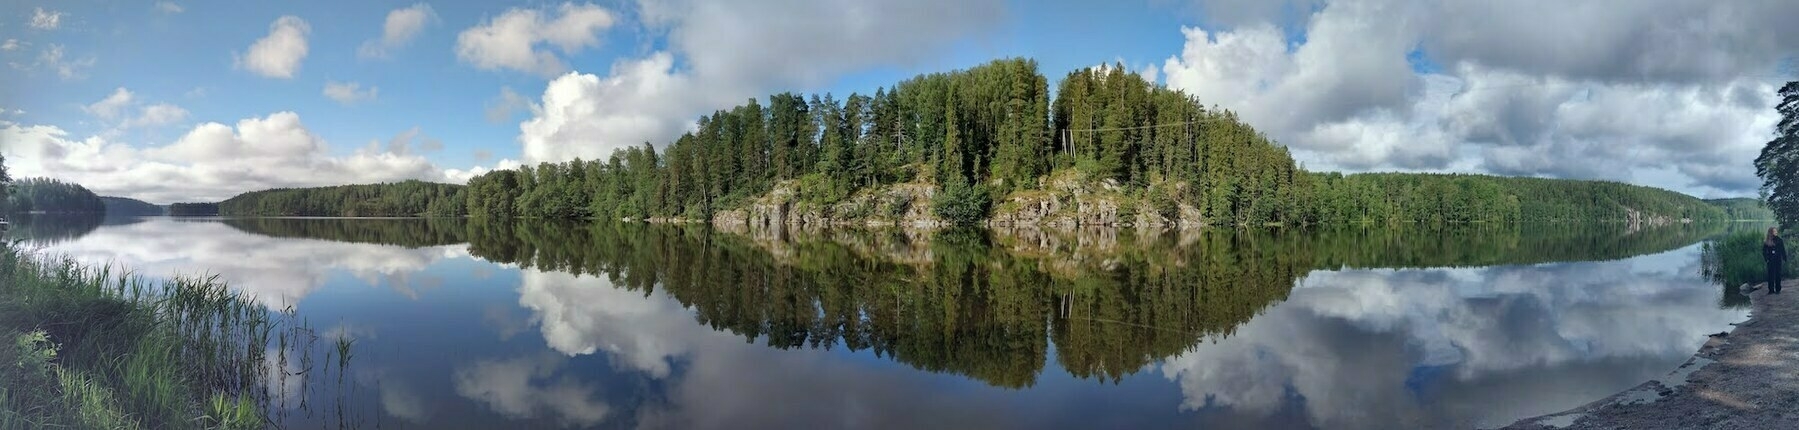 panorama of finnish lake